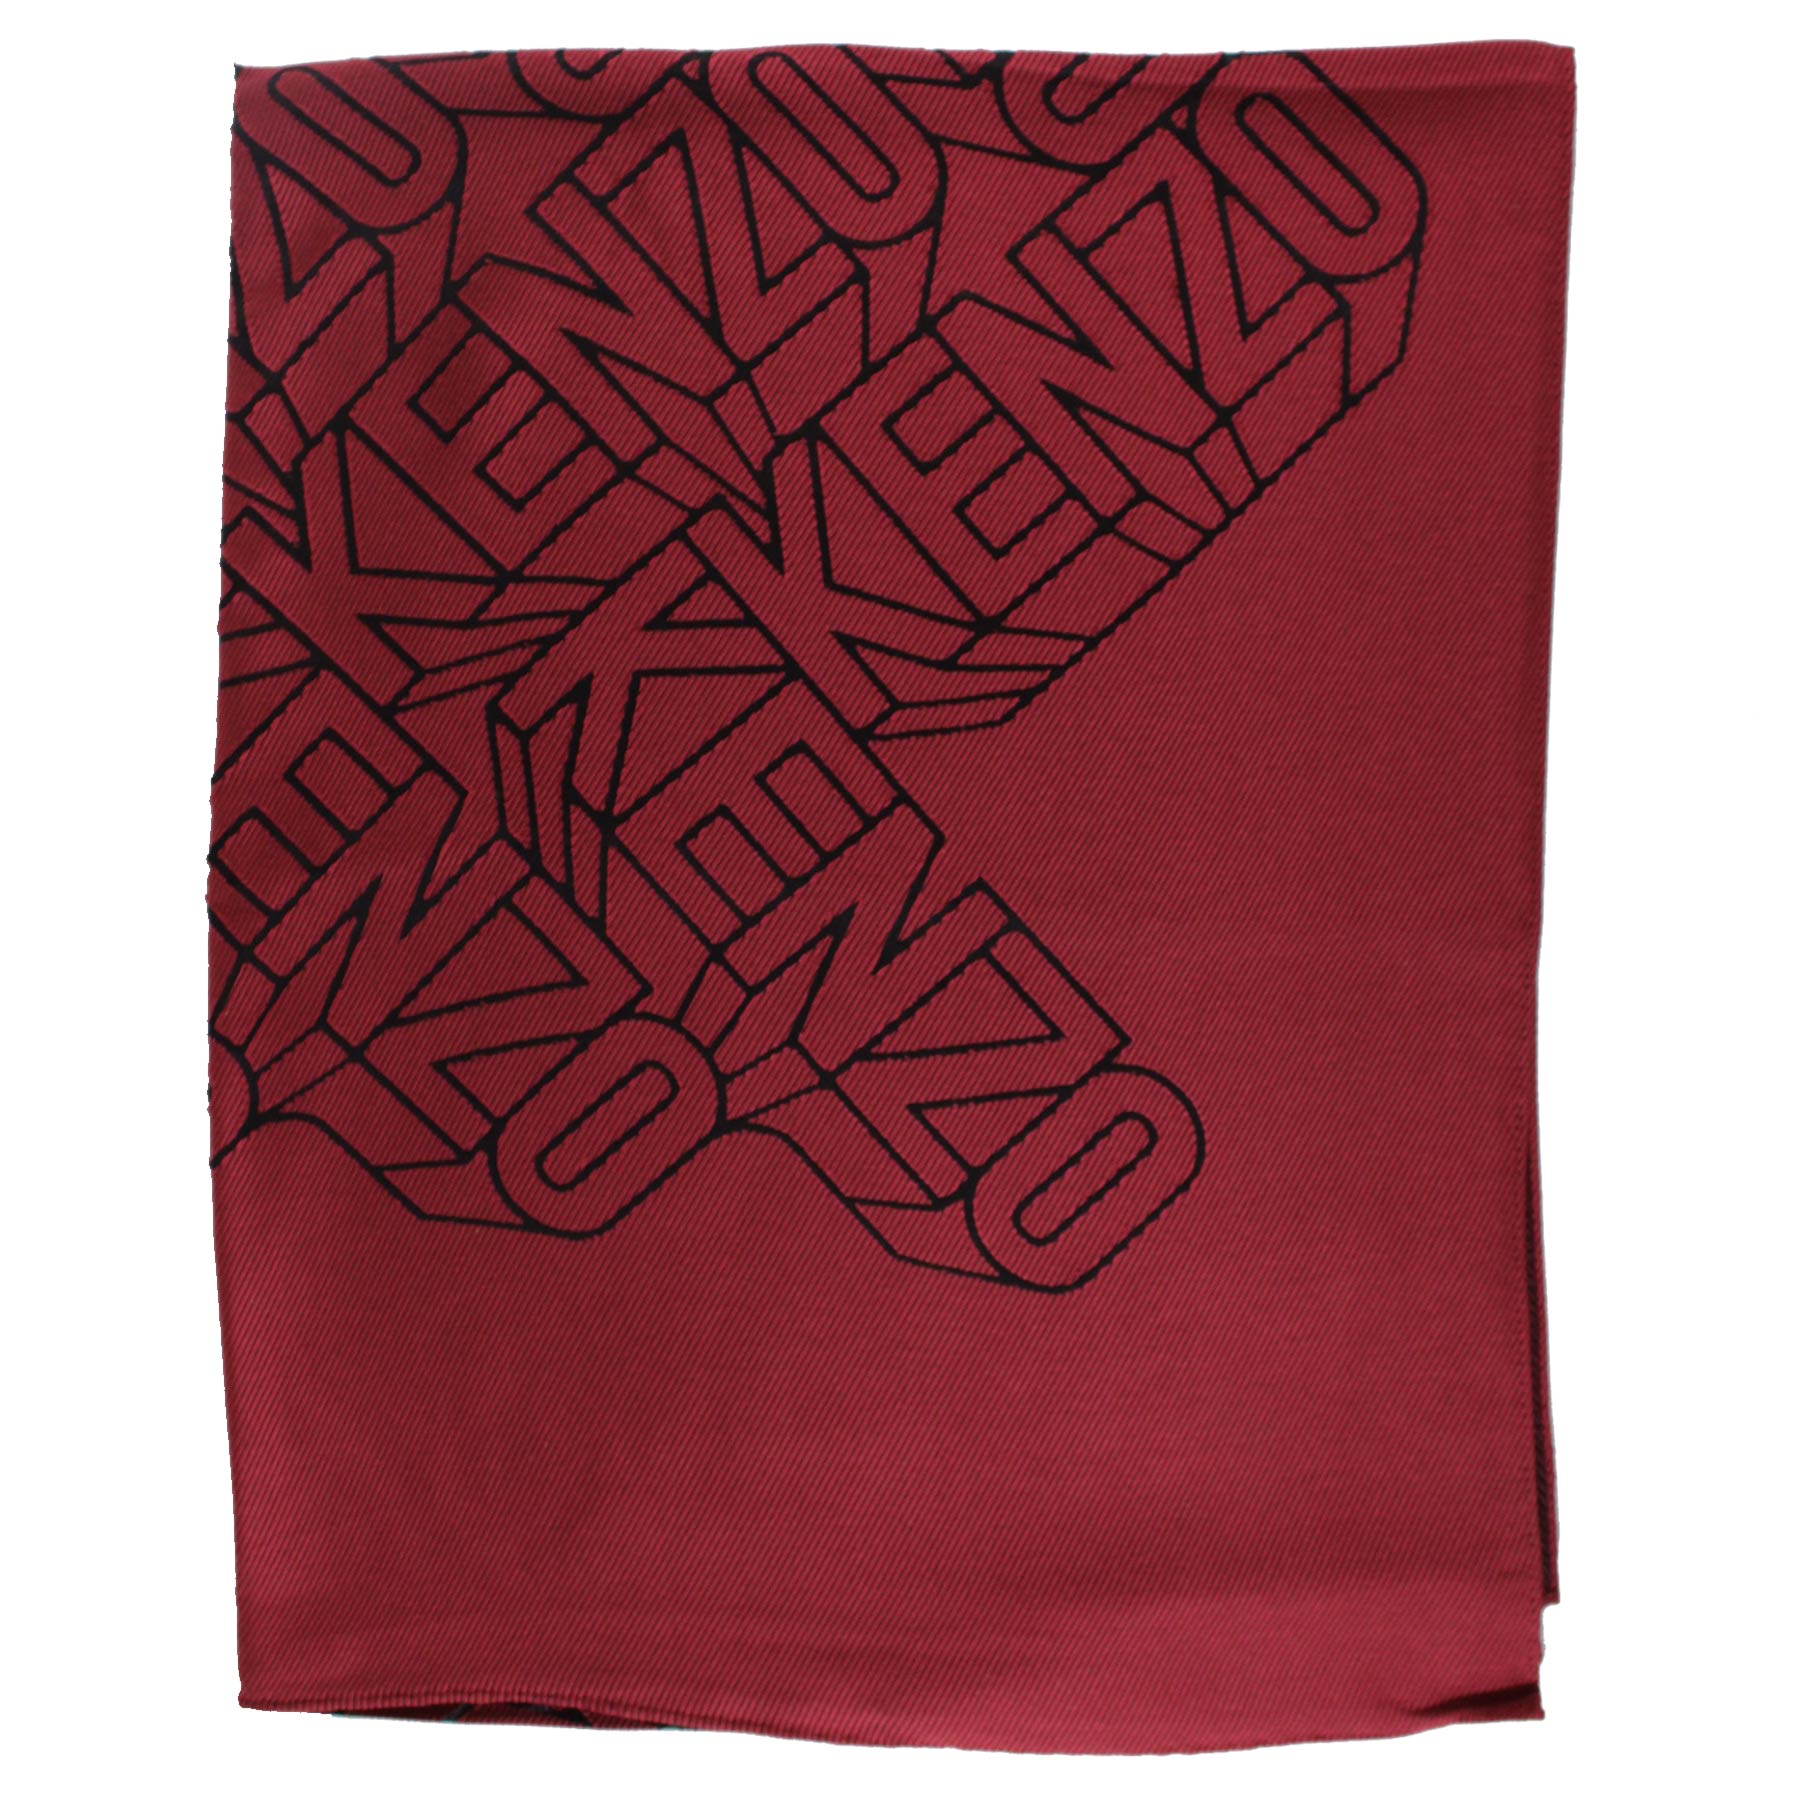 Kenzo Scarf Brick Red Logo Design - Modal Silk Shawl